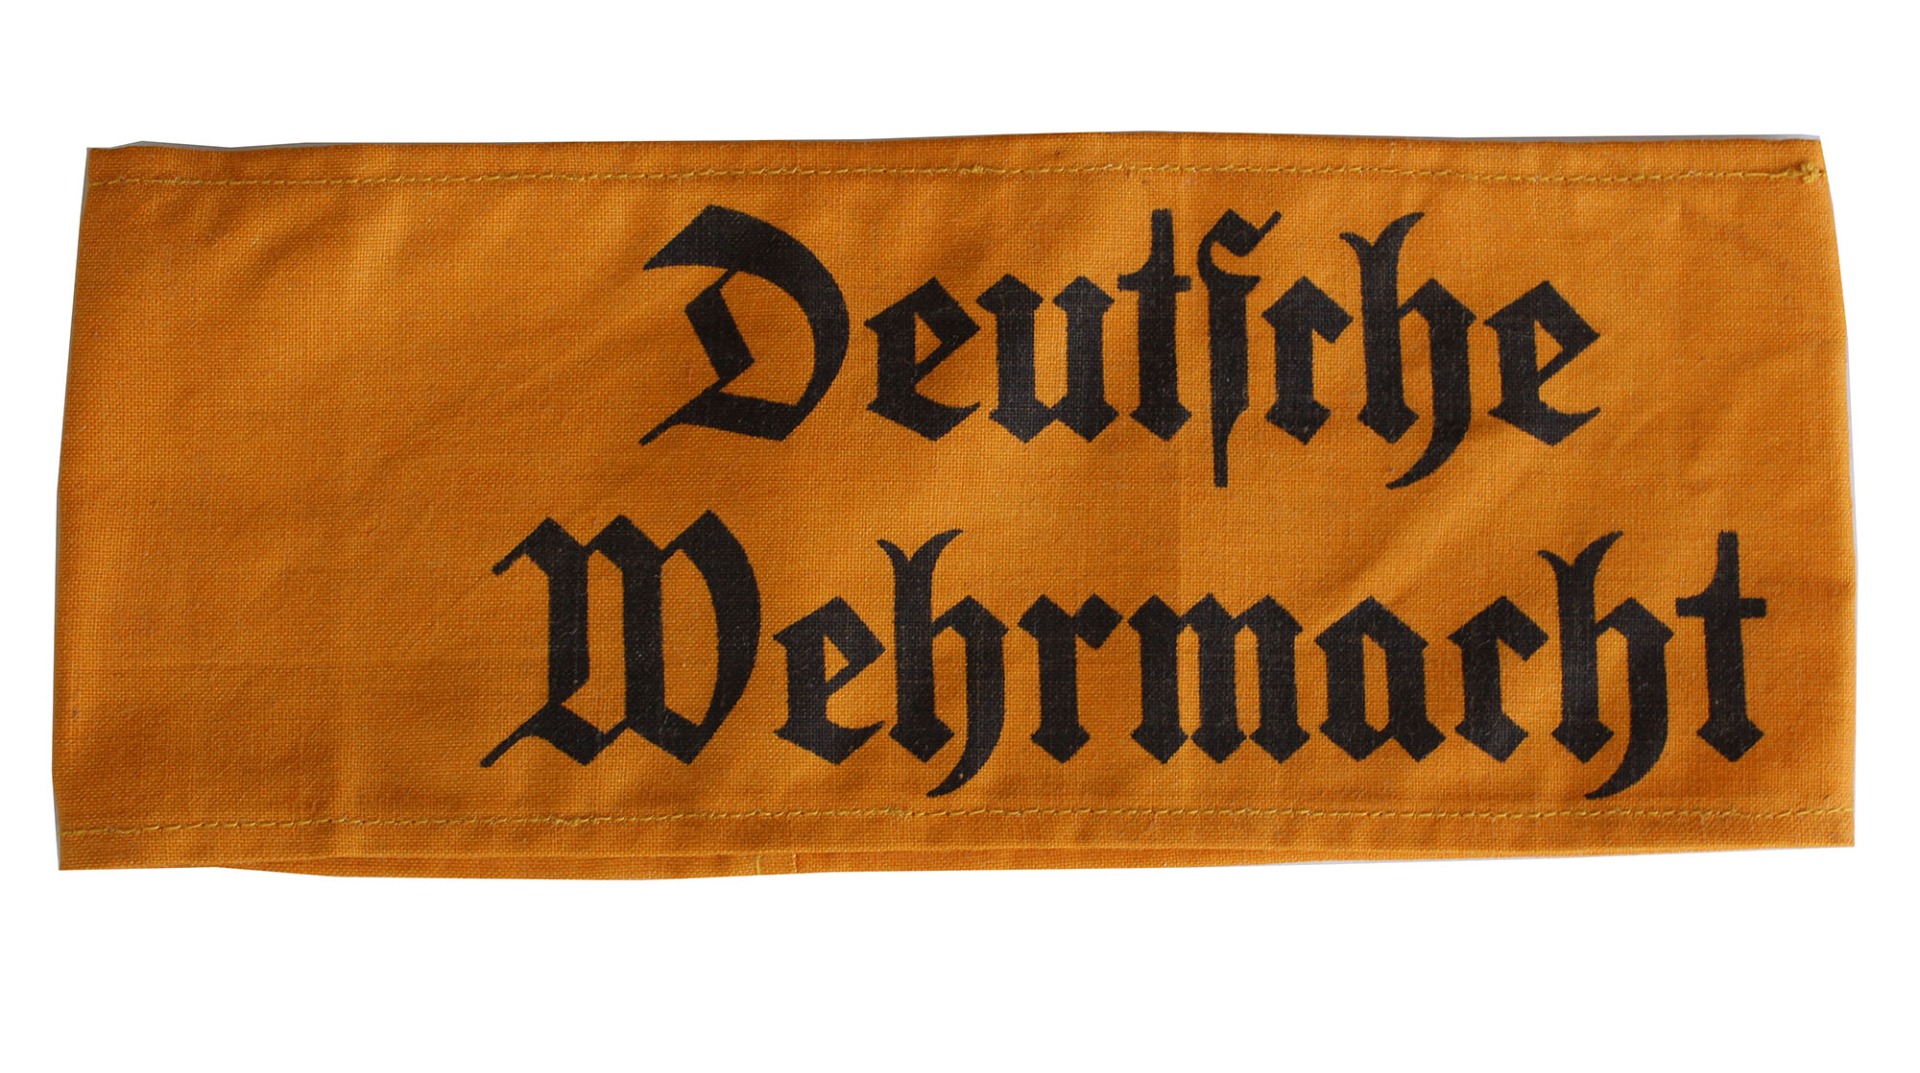 GERMAN DEUTSCHE WEHRMACHT ARMBAND IN GOTHIC SCRIPT ORIGINAL